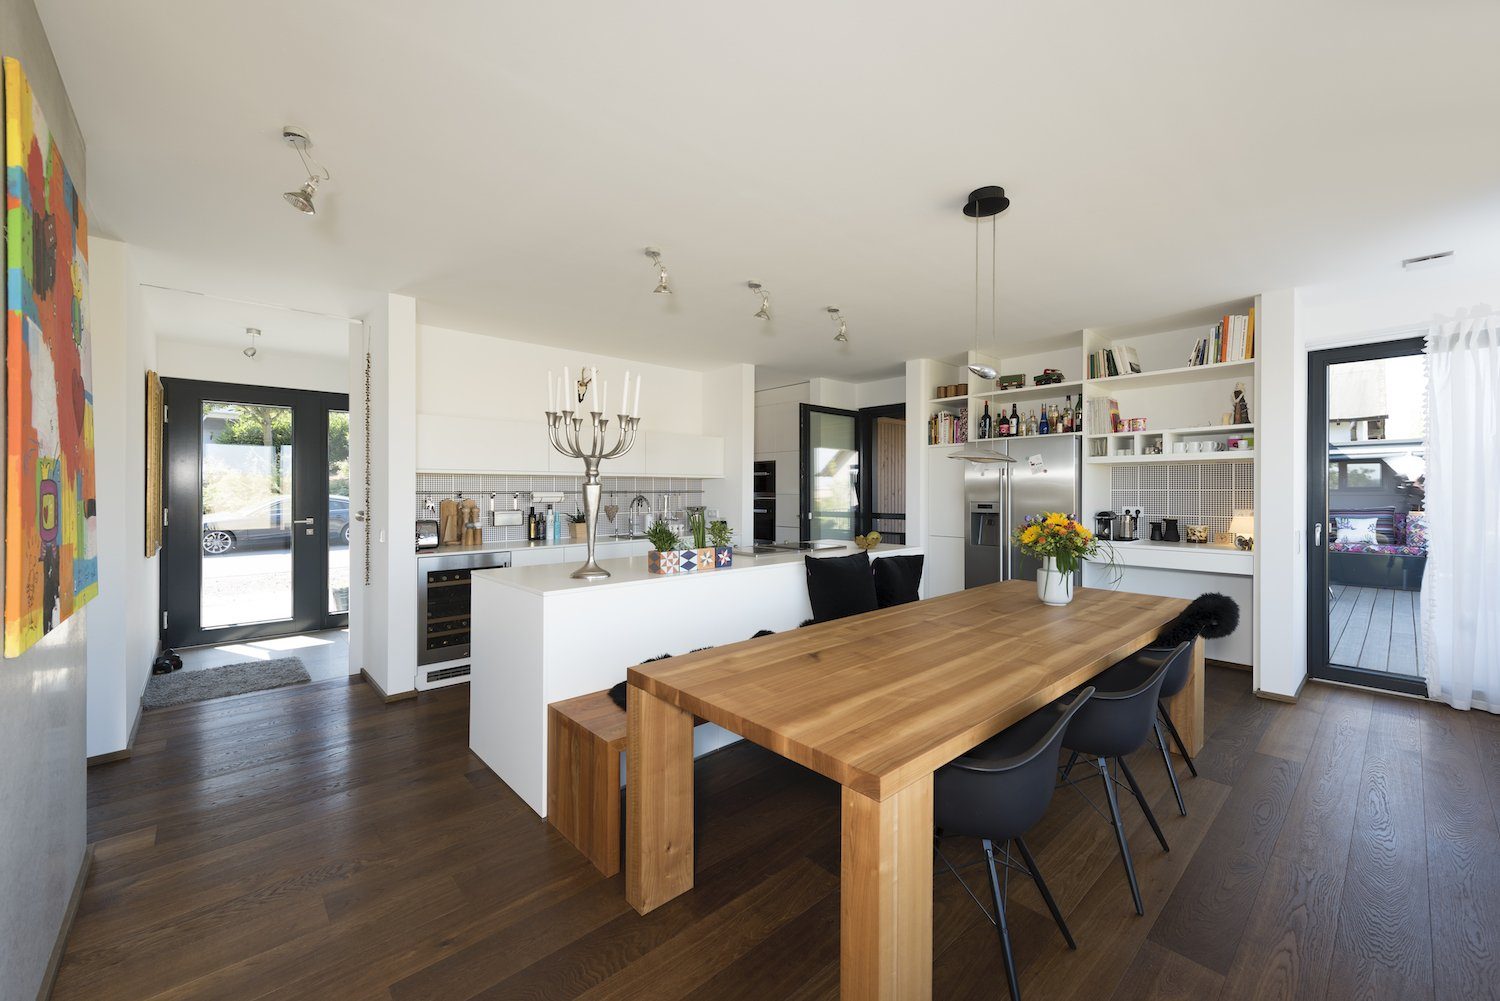 Kundenhaus Schaub - Ein wohnzimmer mit holzboden - Interior Design Services